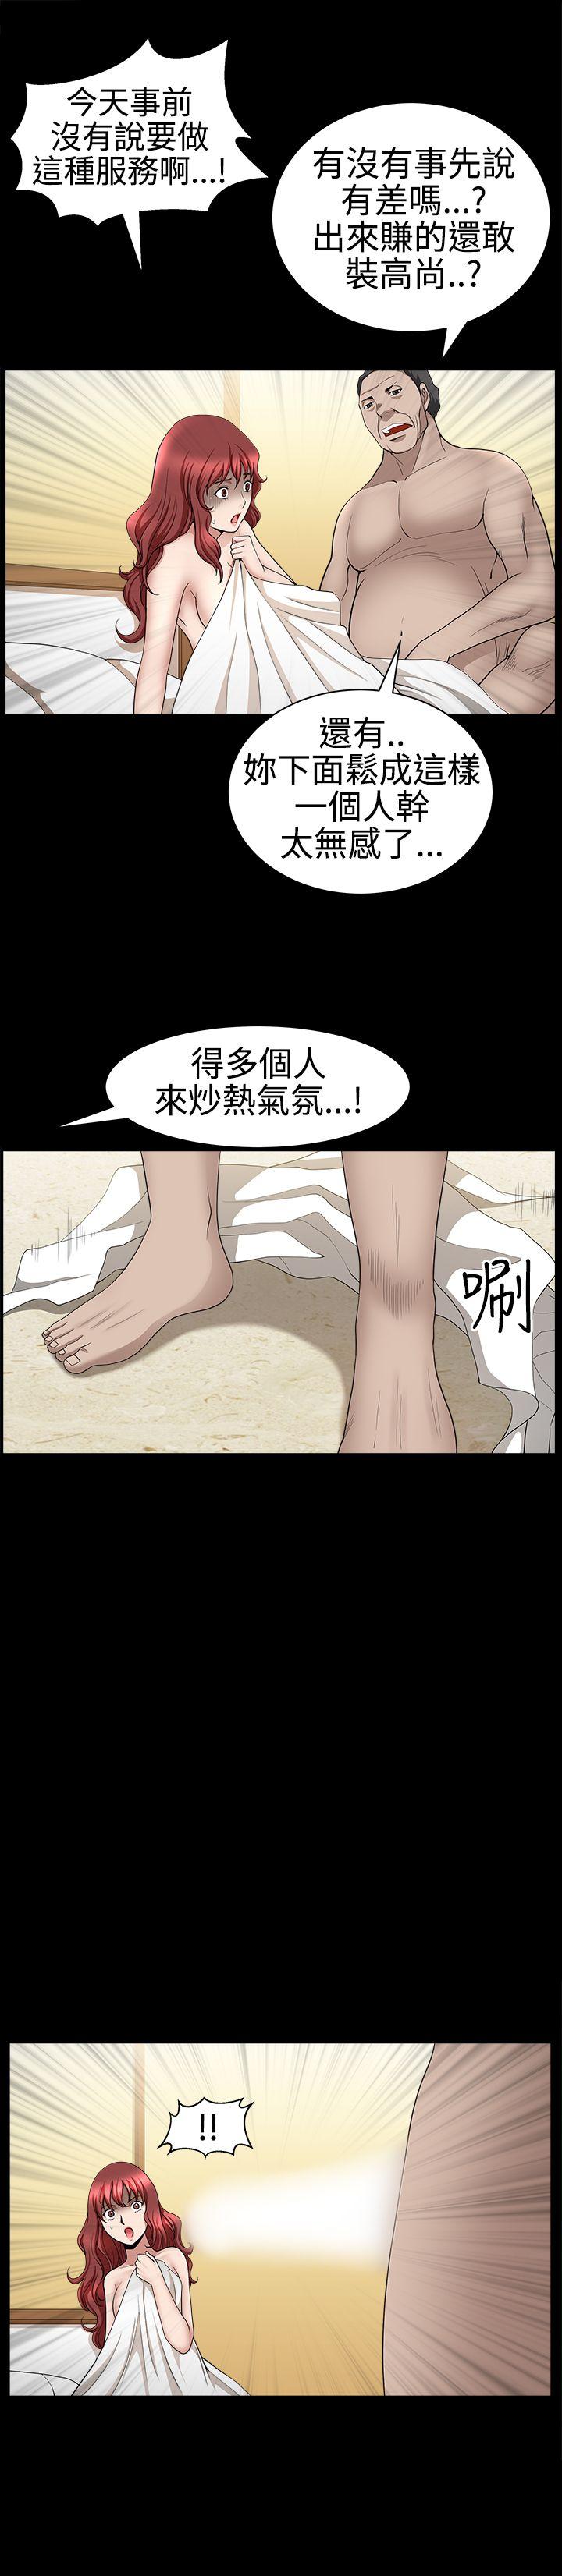 韩国污漫画 人妻性解放3:粗糙的手 第28话 30